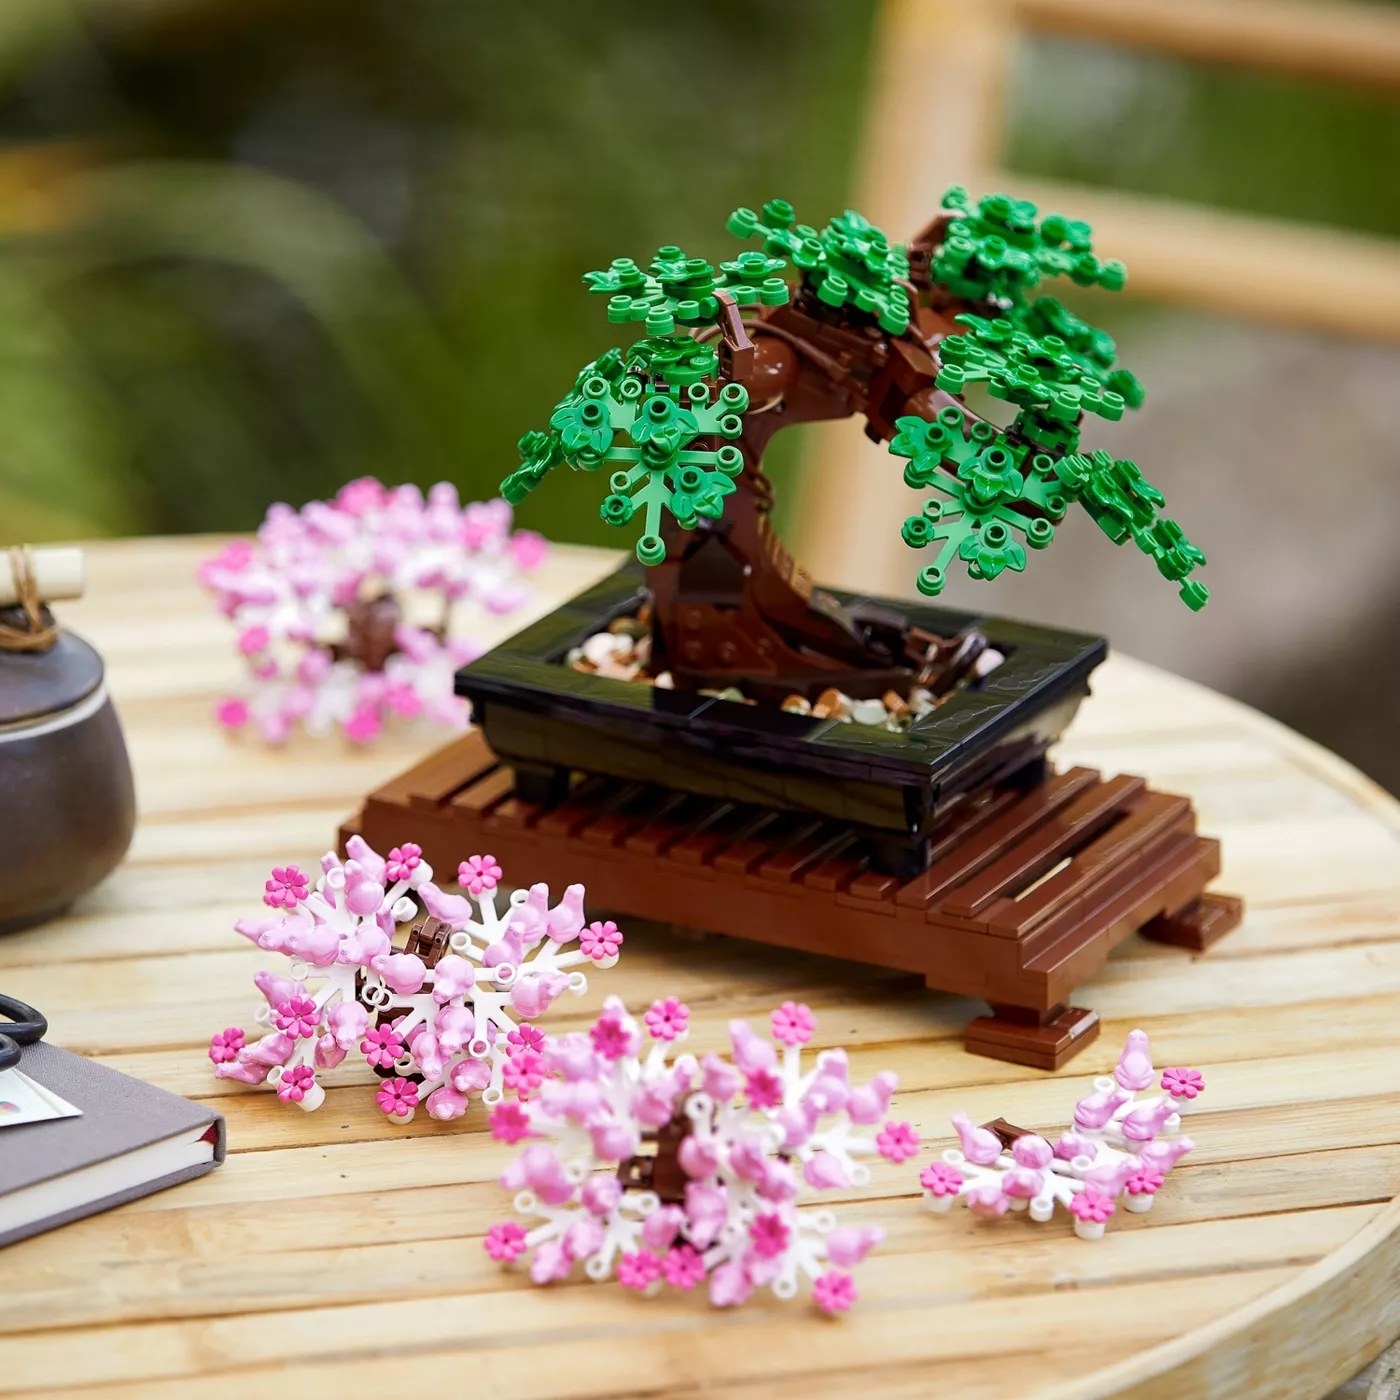 The bonsai LEGO set